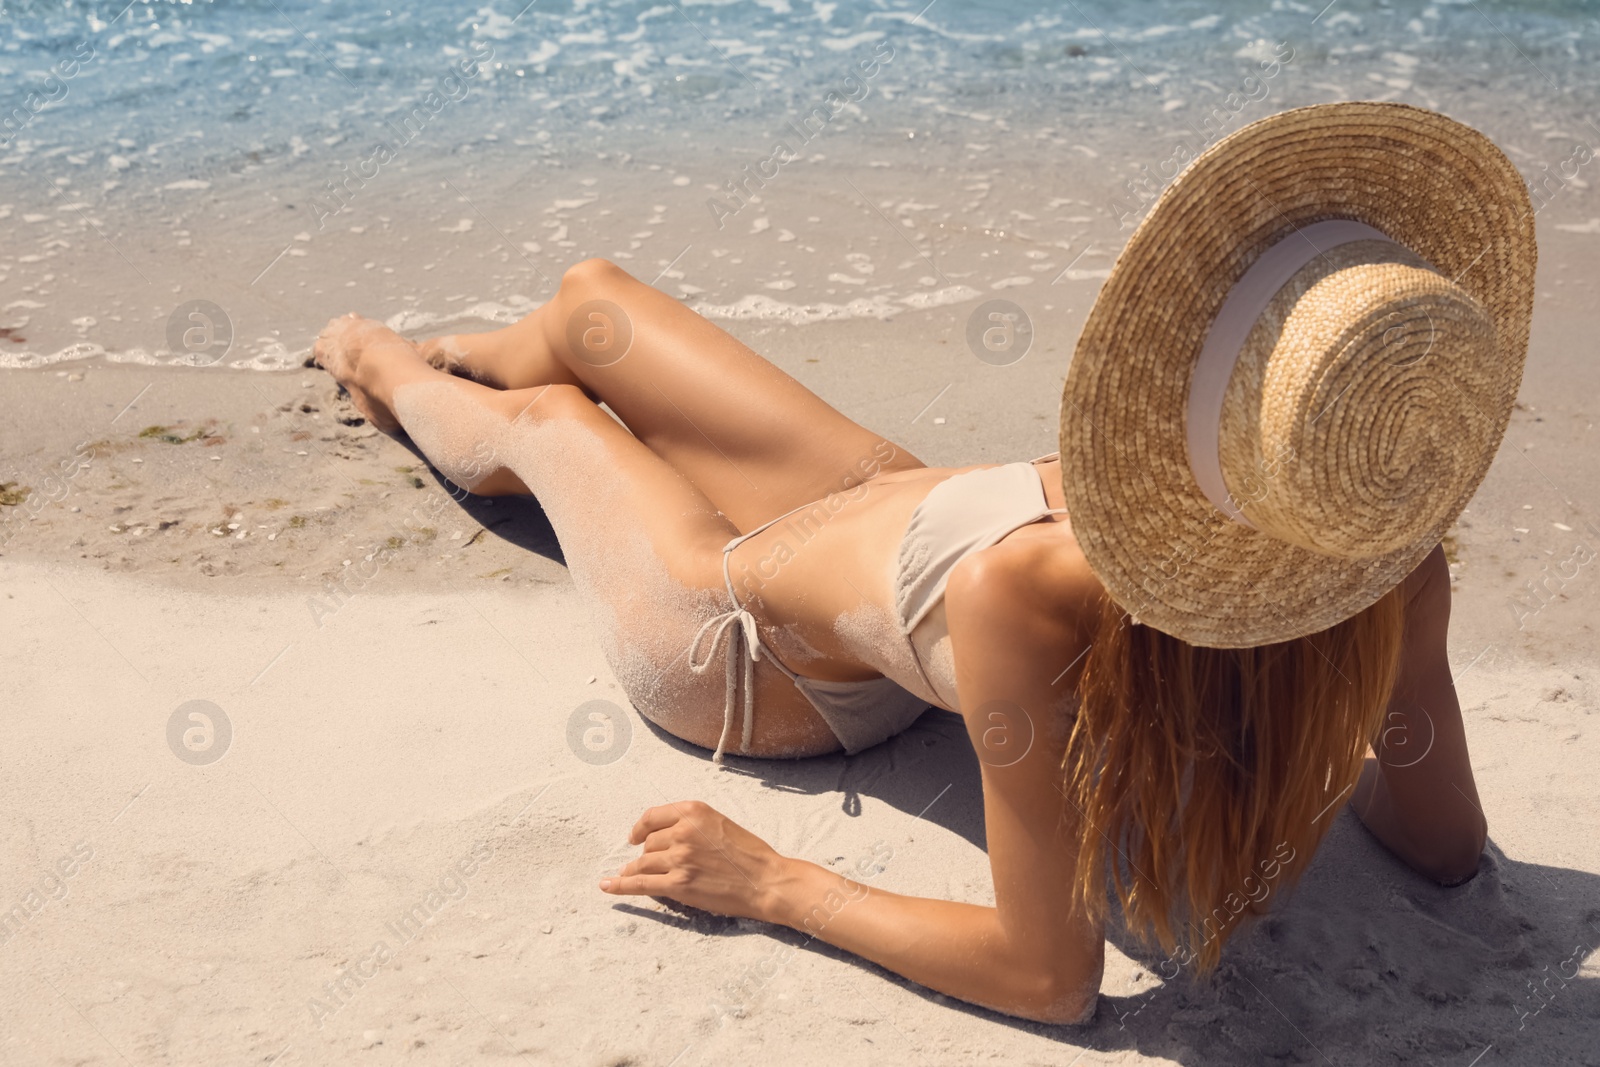 Photo of Woman in bikini on sandy beach near sea